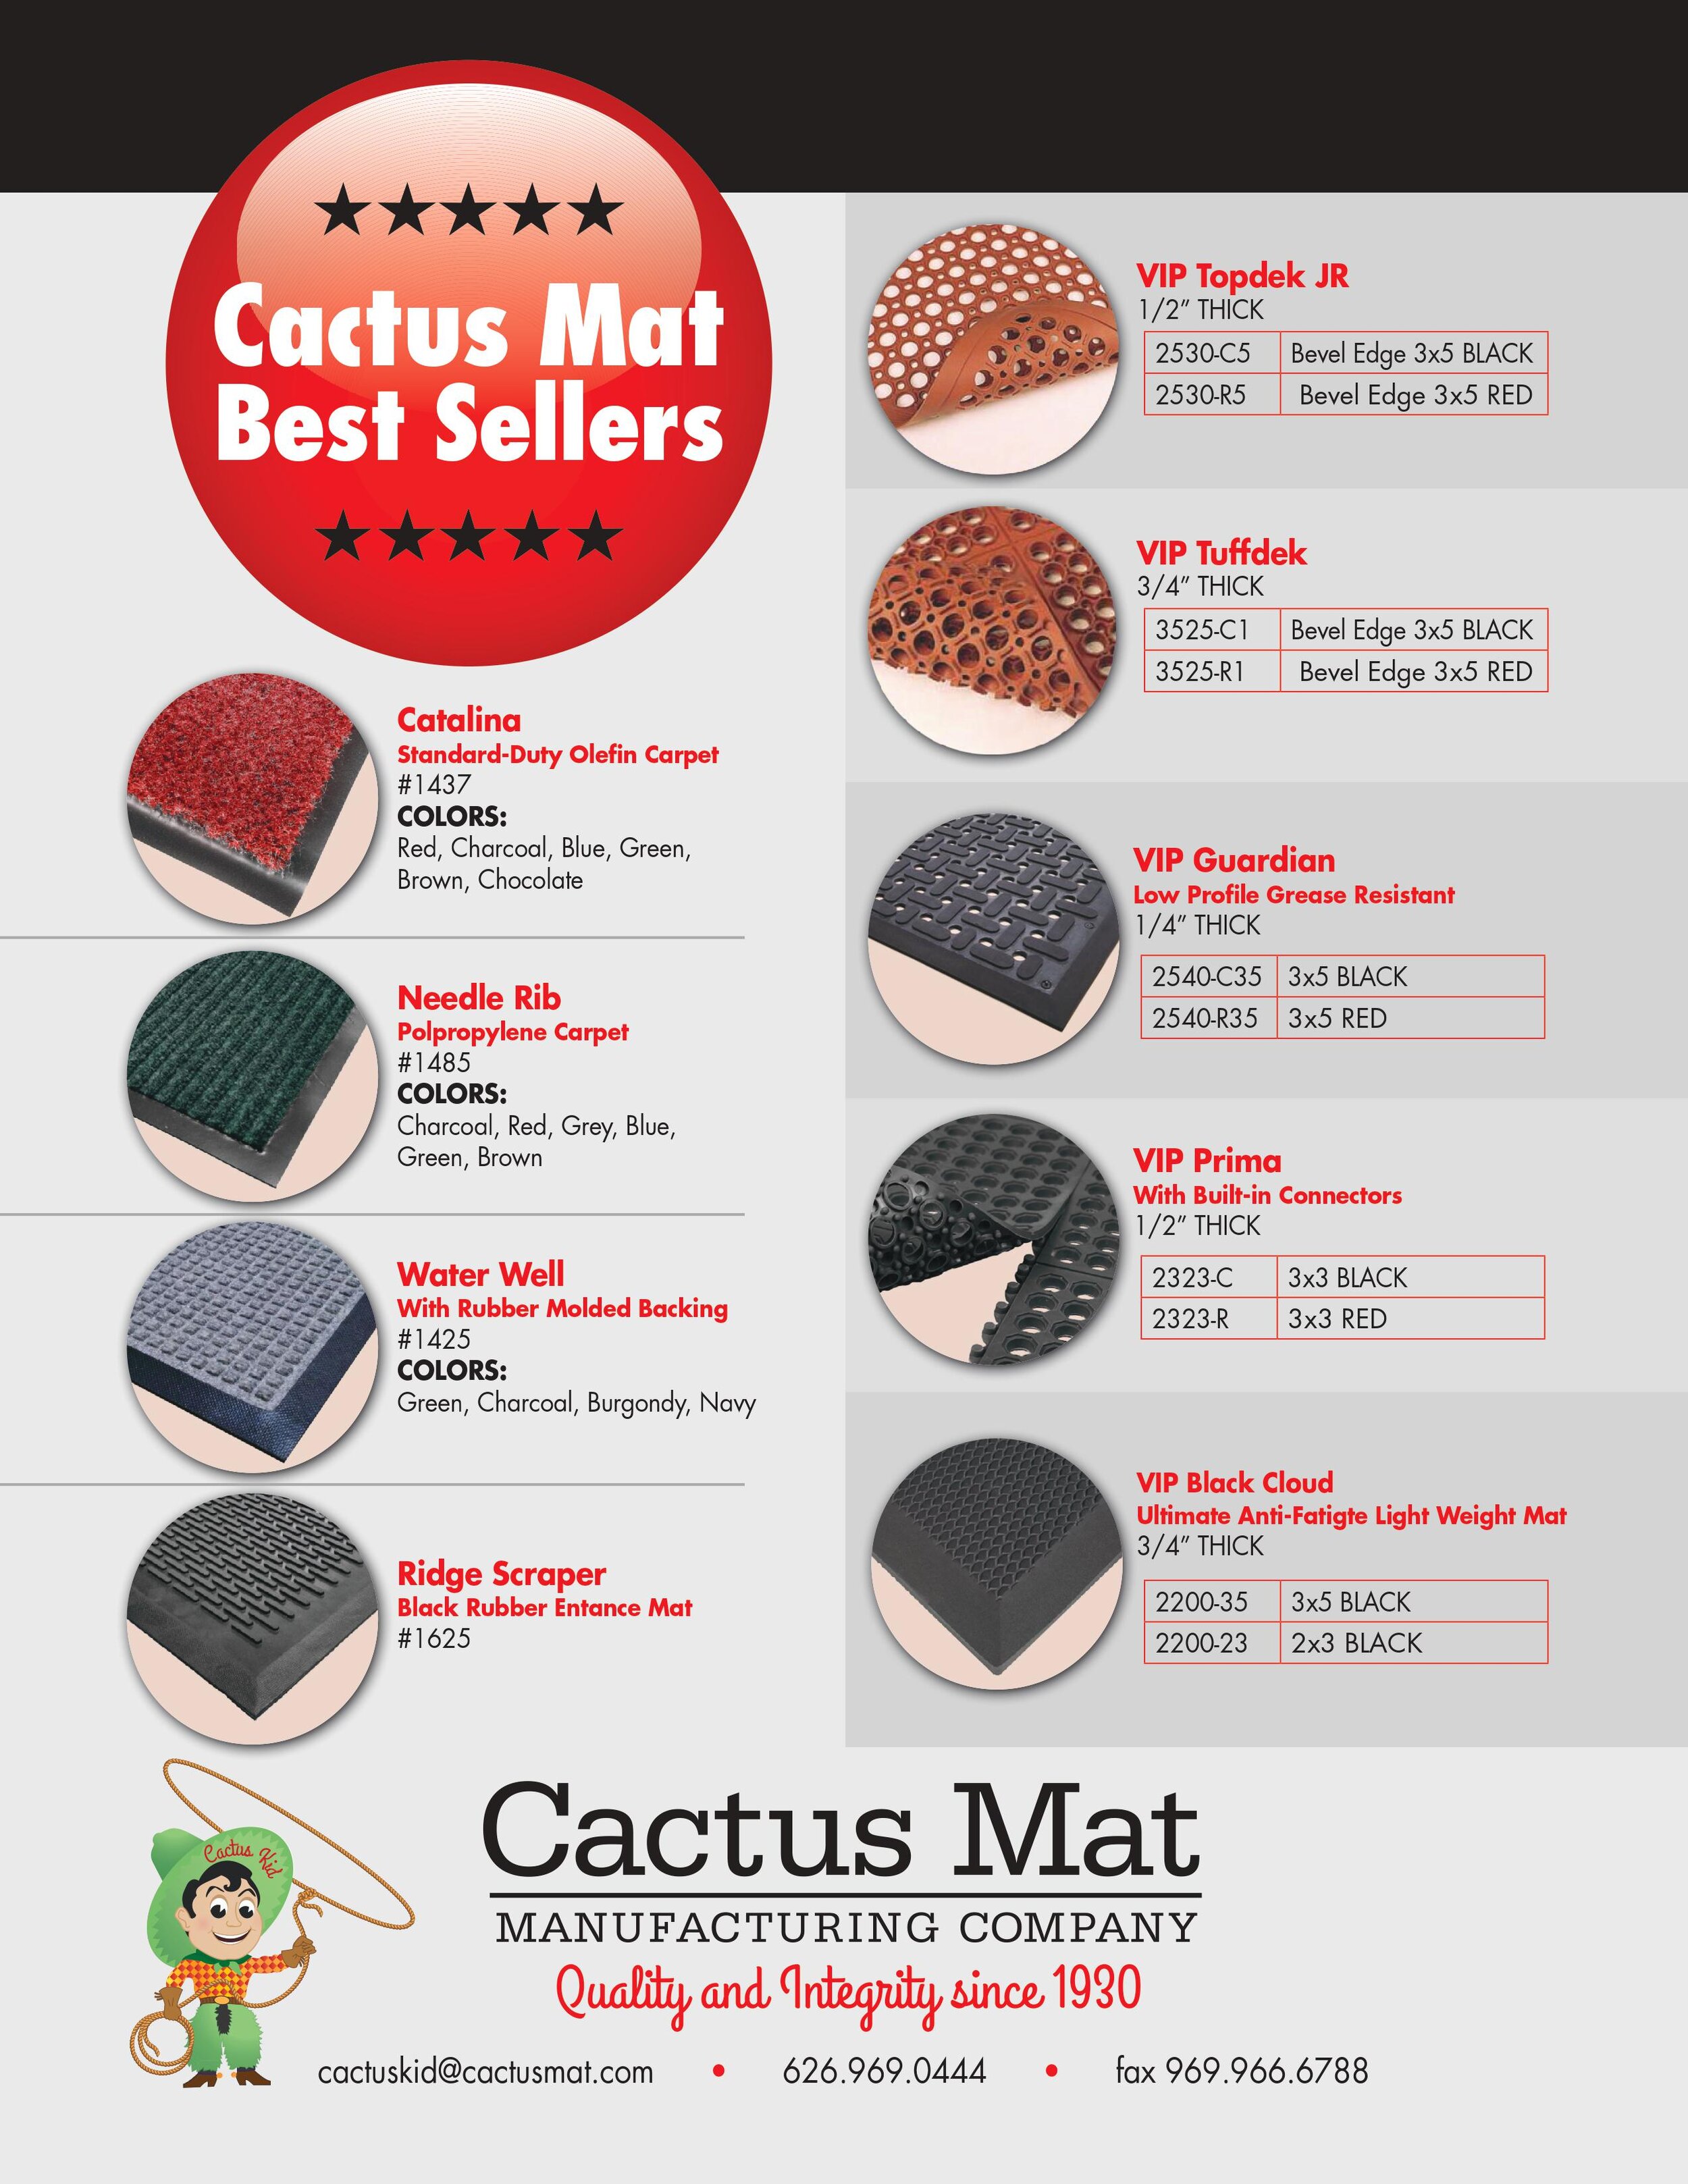 Cactus Mat 2540-R35 VIP Guardian Rubber Mat, 3' x 5